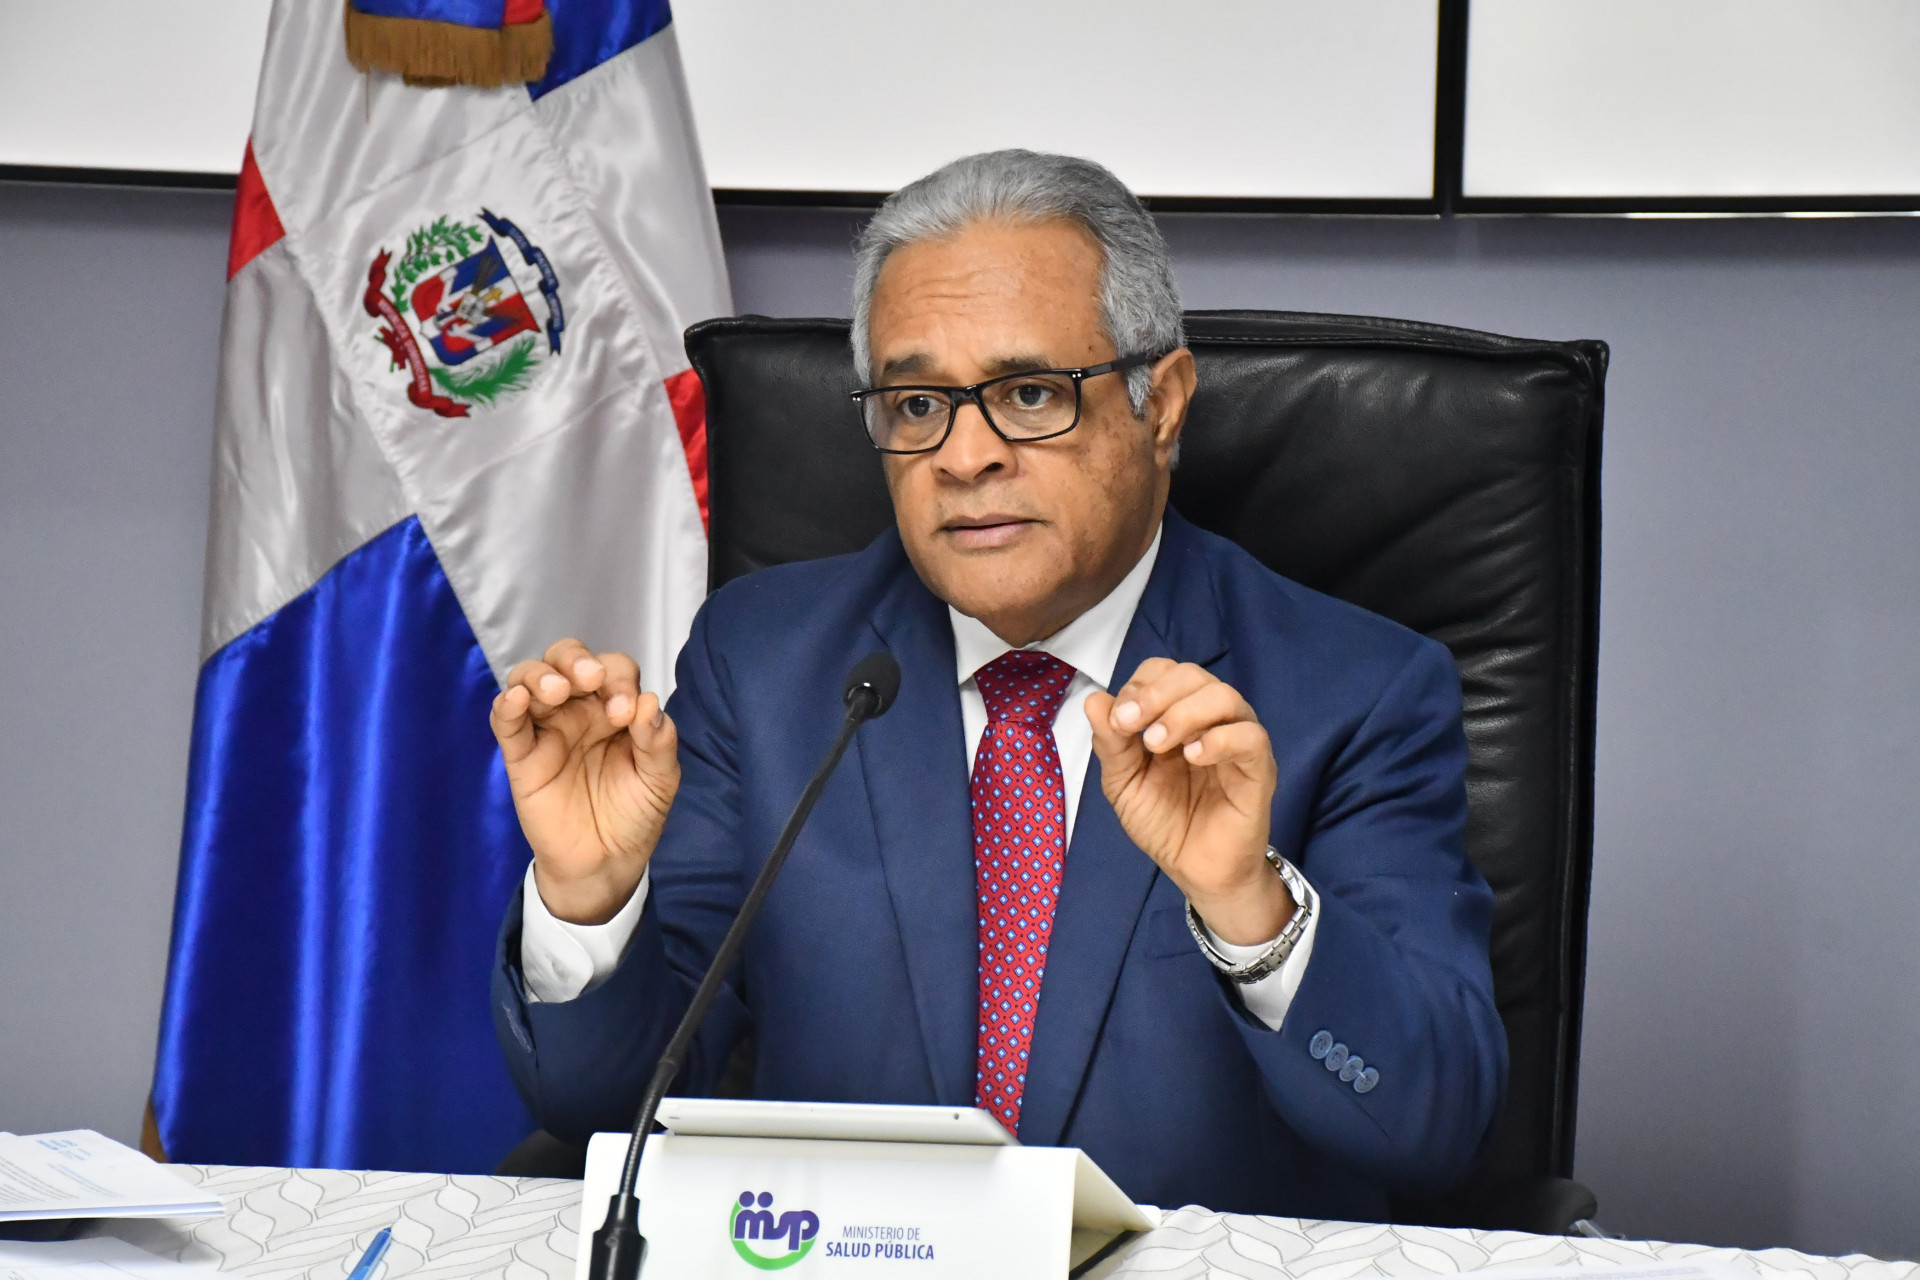 REPÚBLICA DOMINICANA: Ministro de Salud informa recepción de 38,500 pruebas rápidas; exhorta a mantener distanciamiento social para frenar ritmo contagio COVID-19